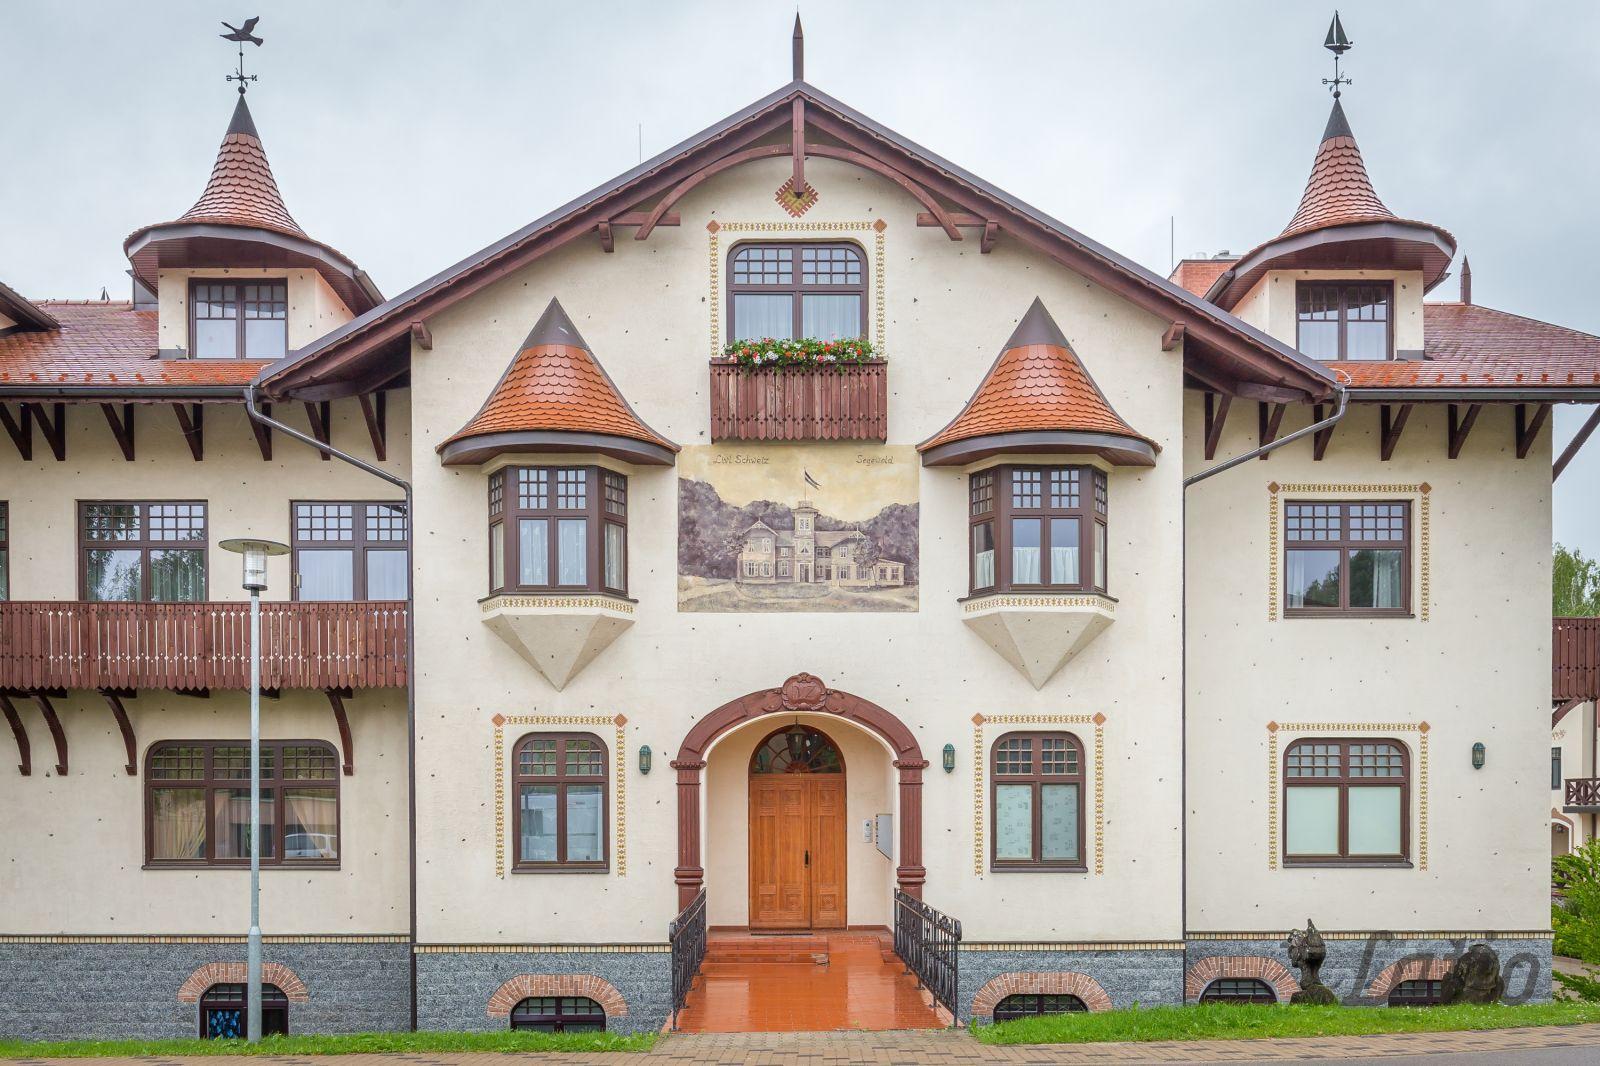 Šarmants mansarda dzīvoklis Alpu stilistikā Siguldas Mazajā Šveicē - Nekustamo īpašumu ziņas - City24.lv nekustamo īpašumu sludinājumu portāls